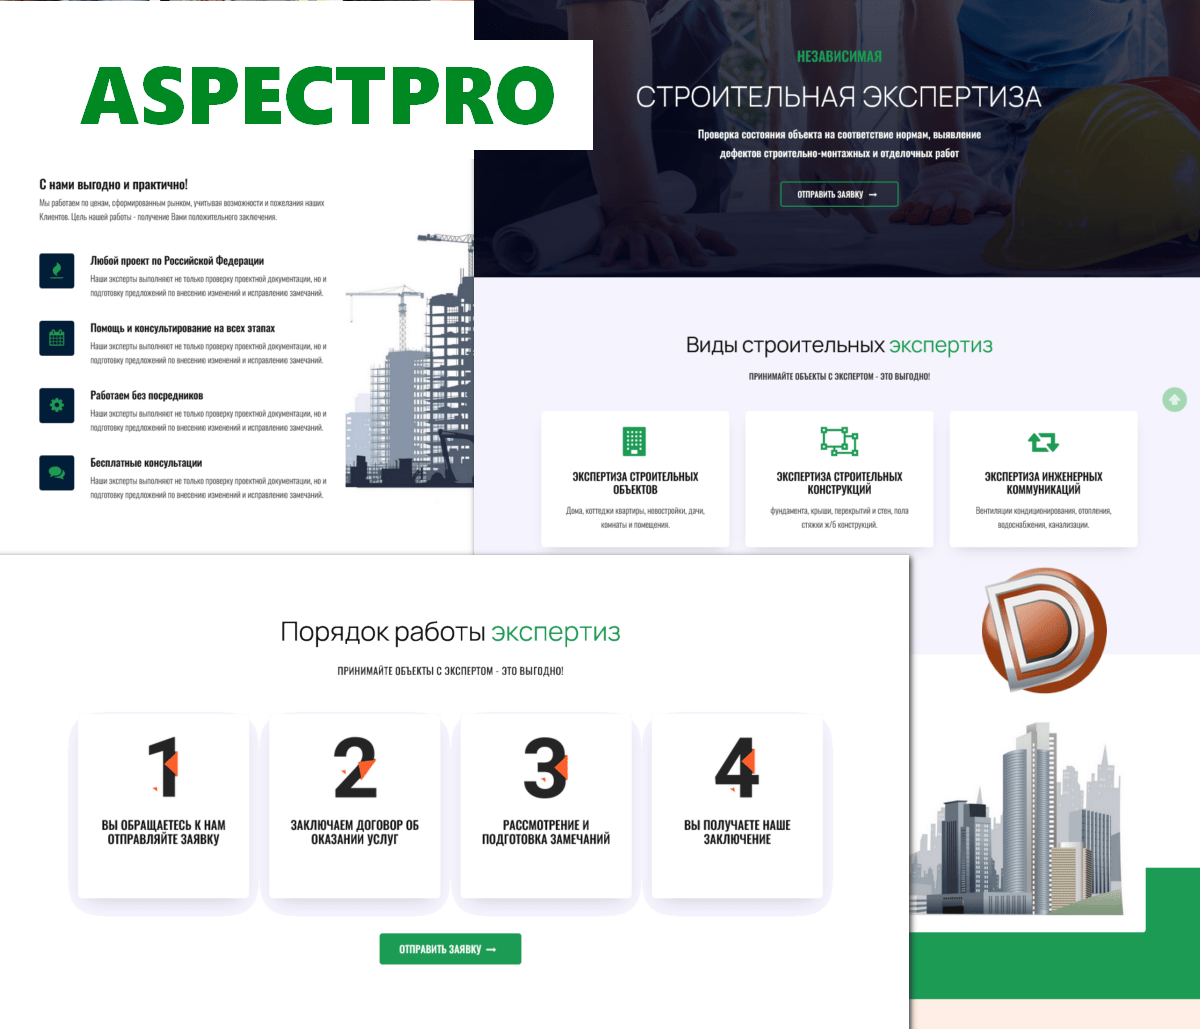 Aspectpro – шаблон сайта экспертной компании Dle 16.0